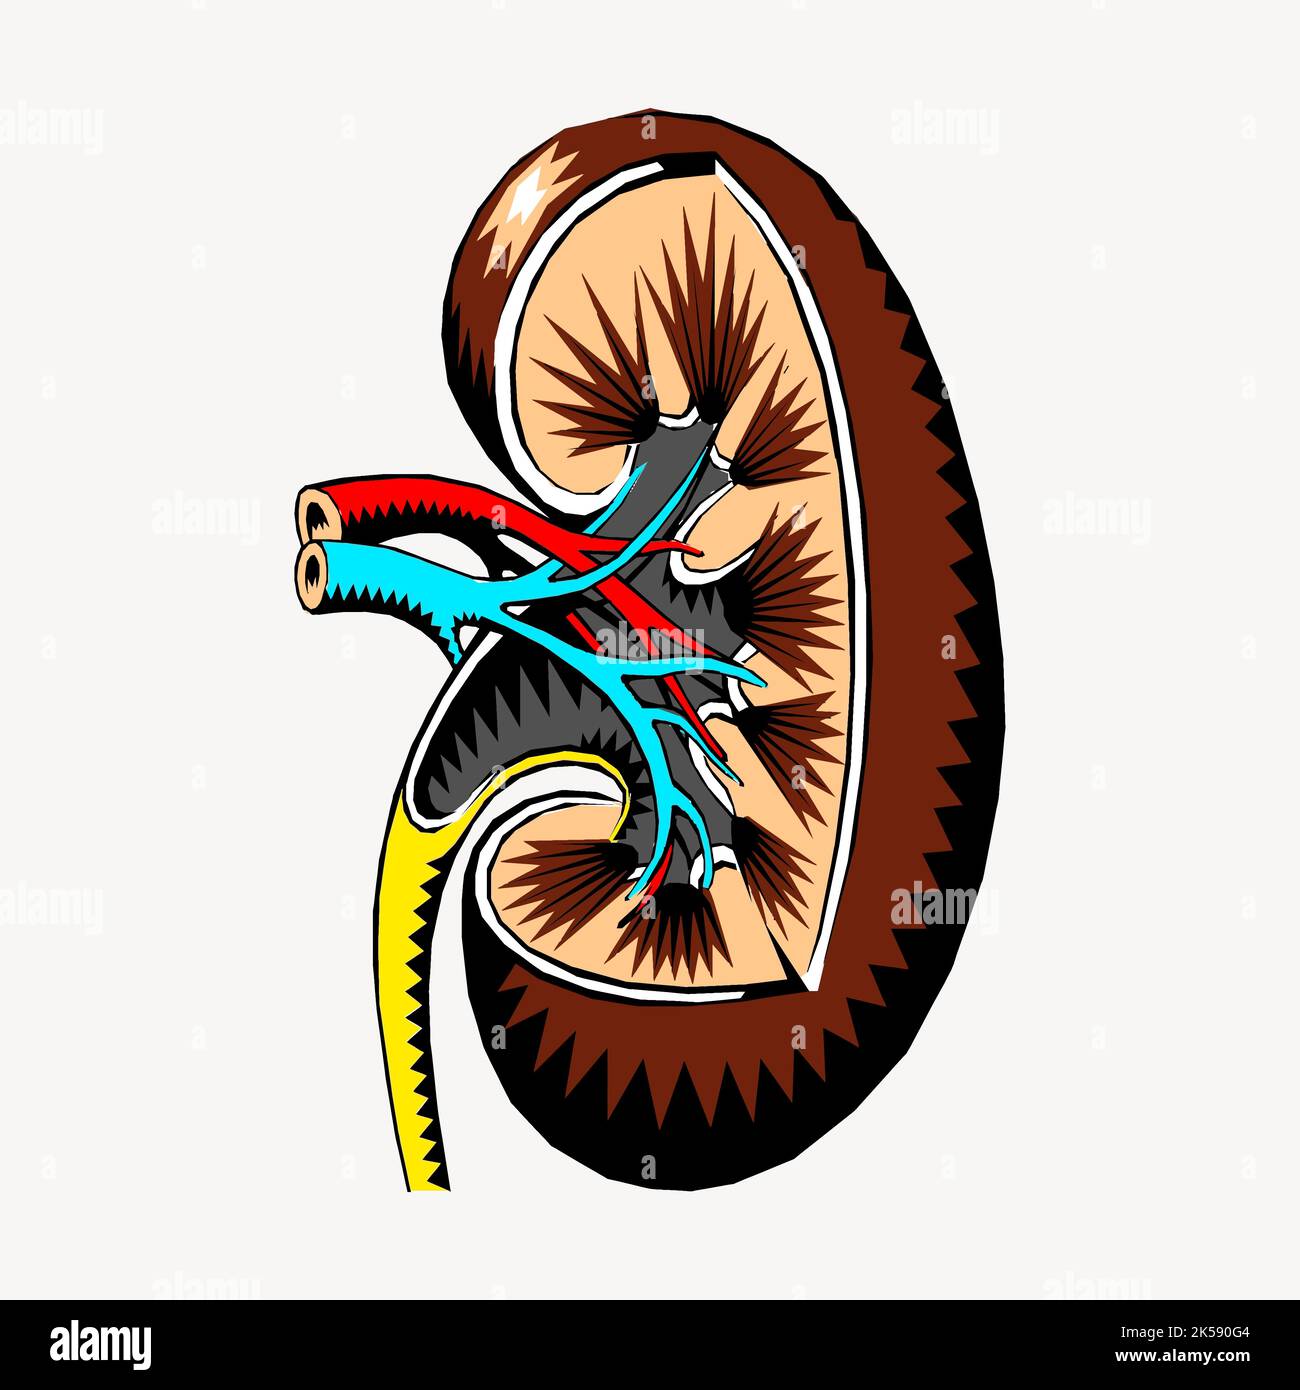 Kidney, organ clipart, medical illustration vector Stock Vector Image ...